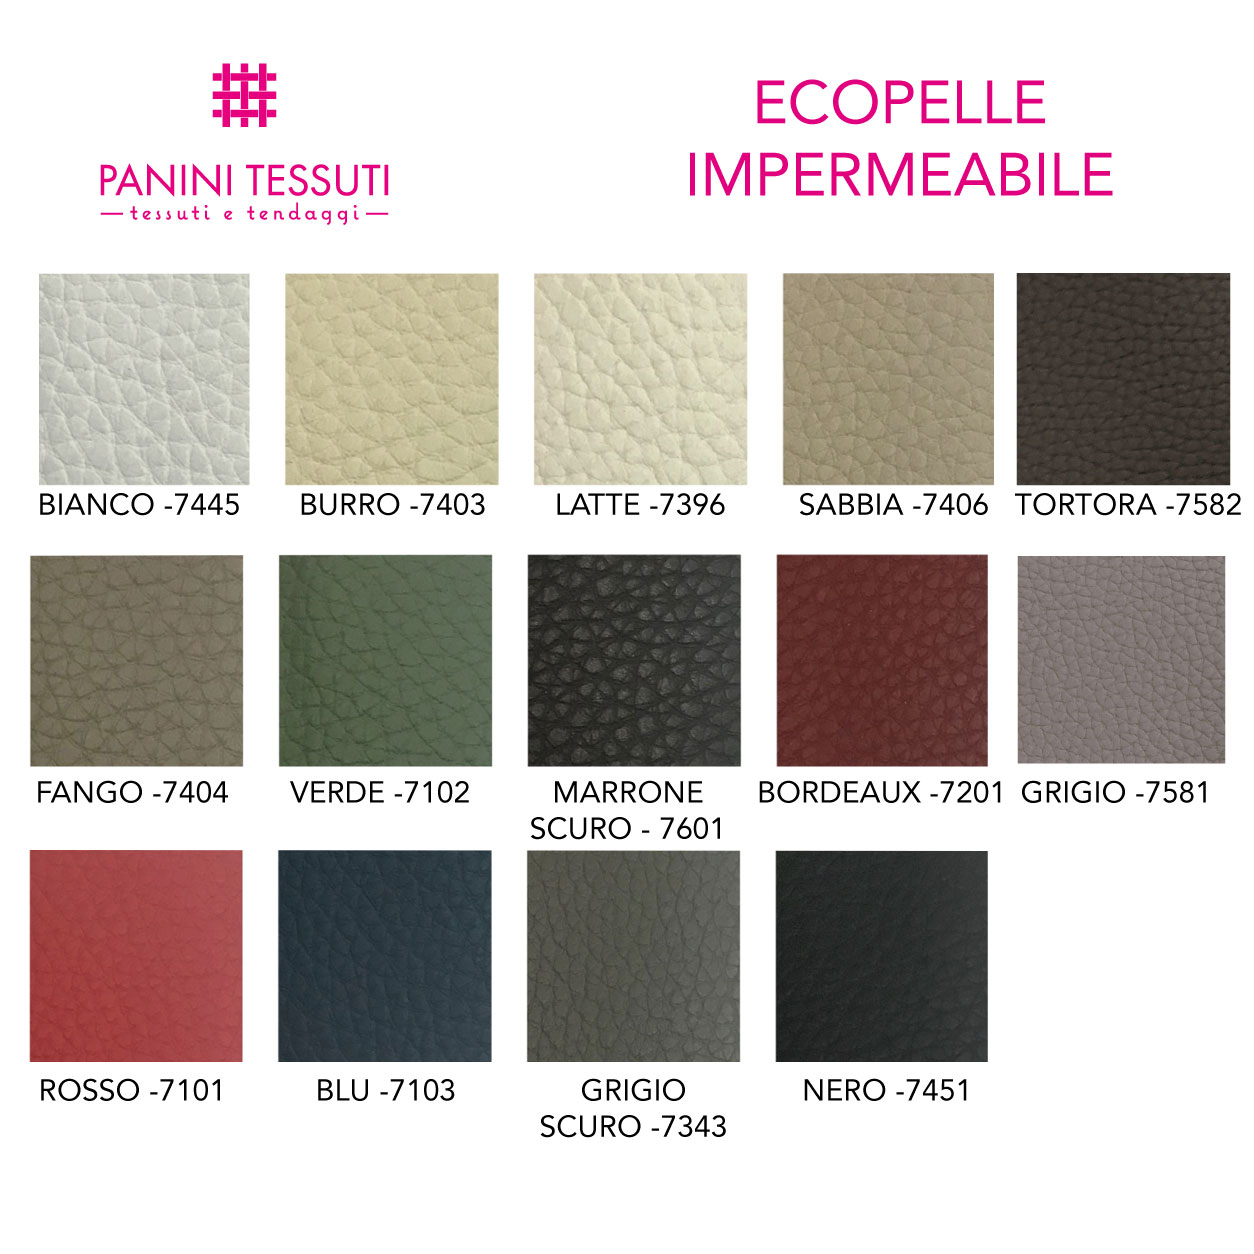 Ecopelle impermeabile cartella colore shopware (2)